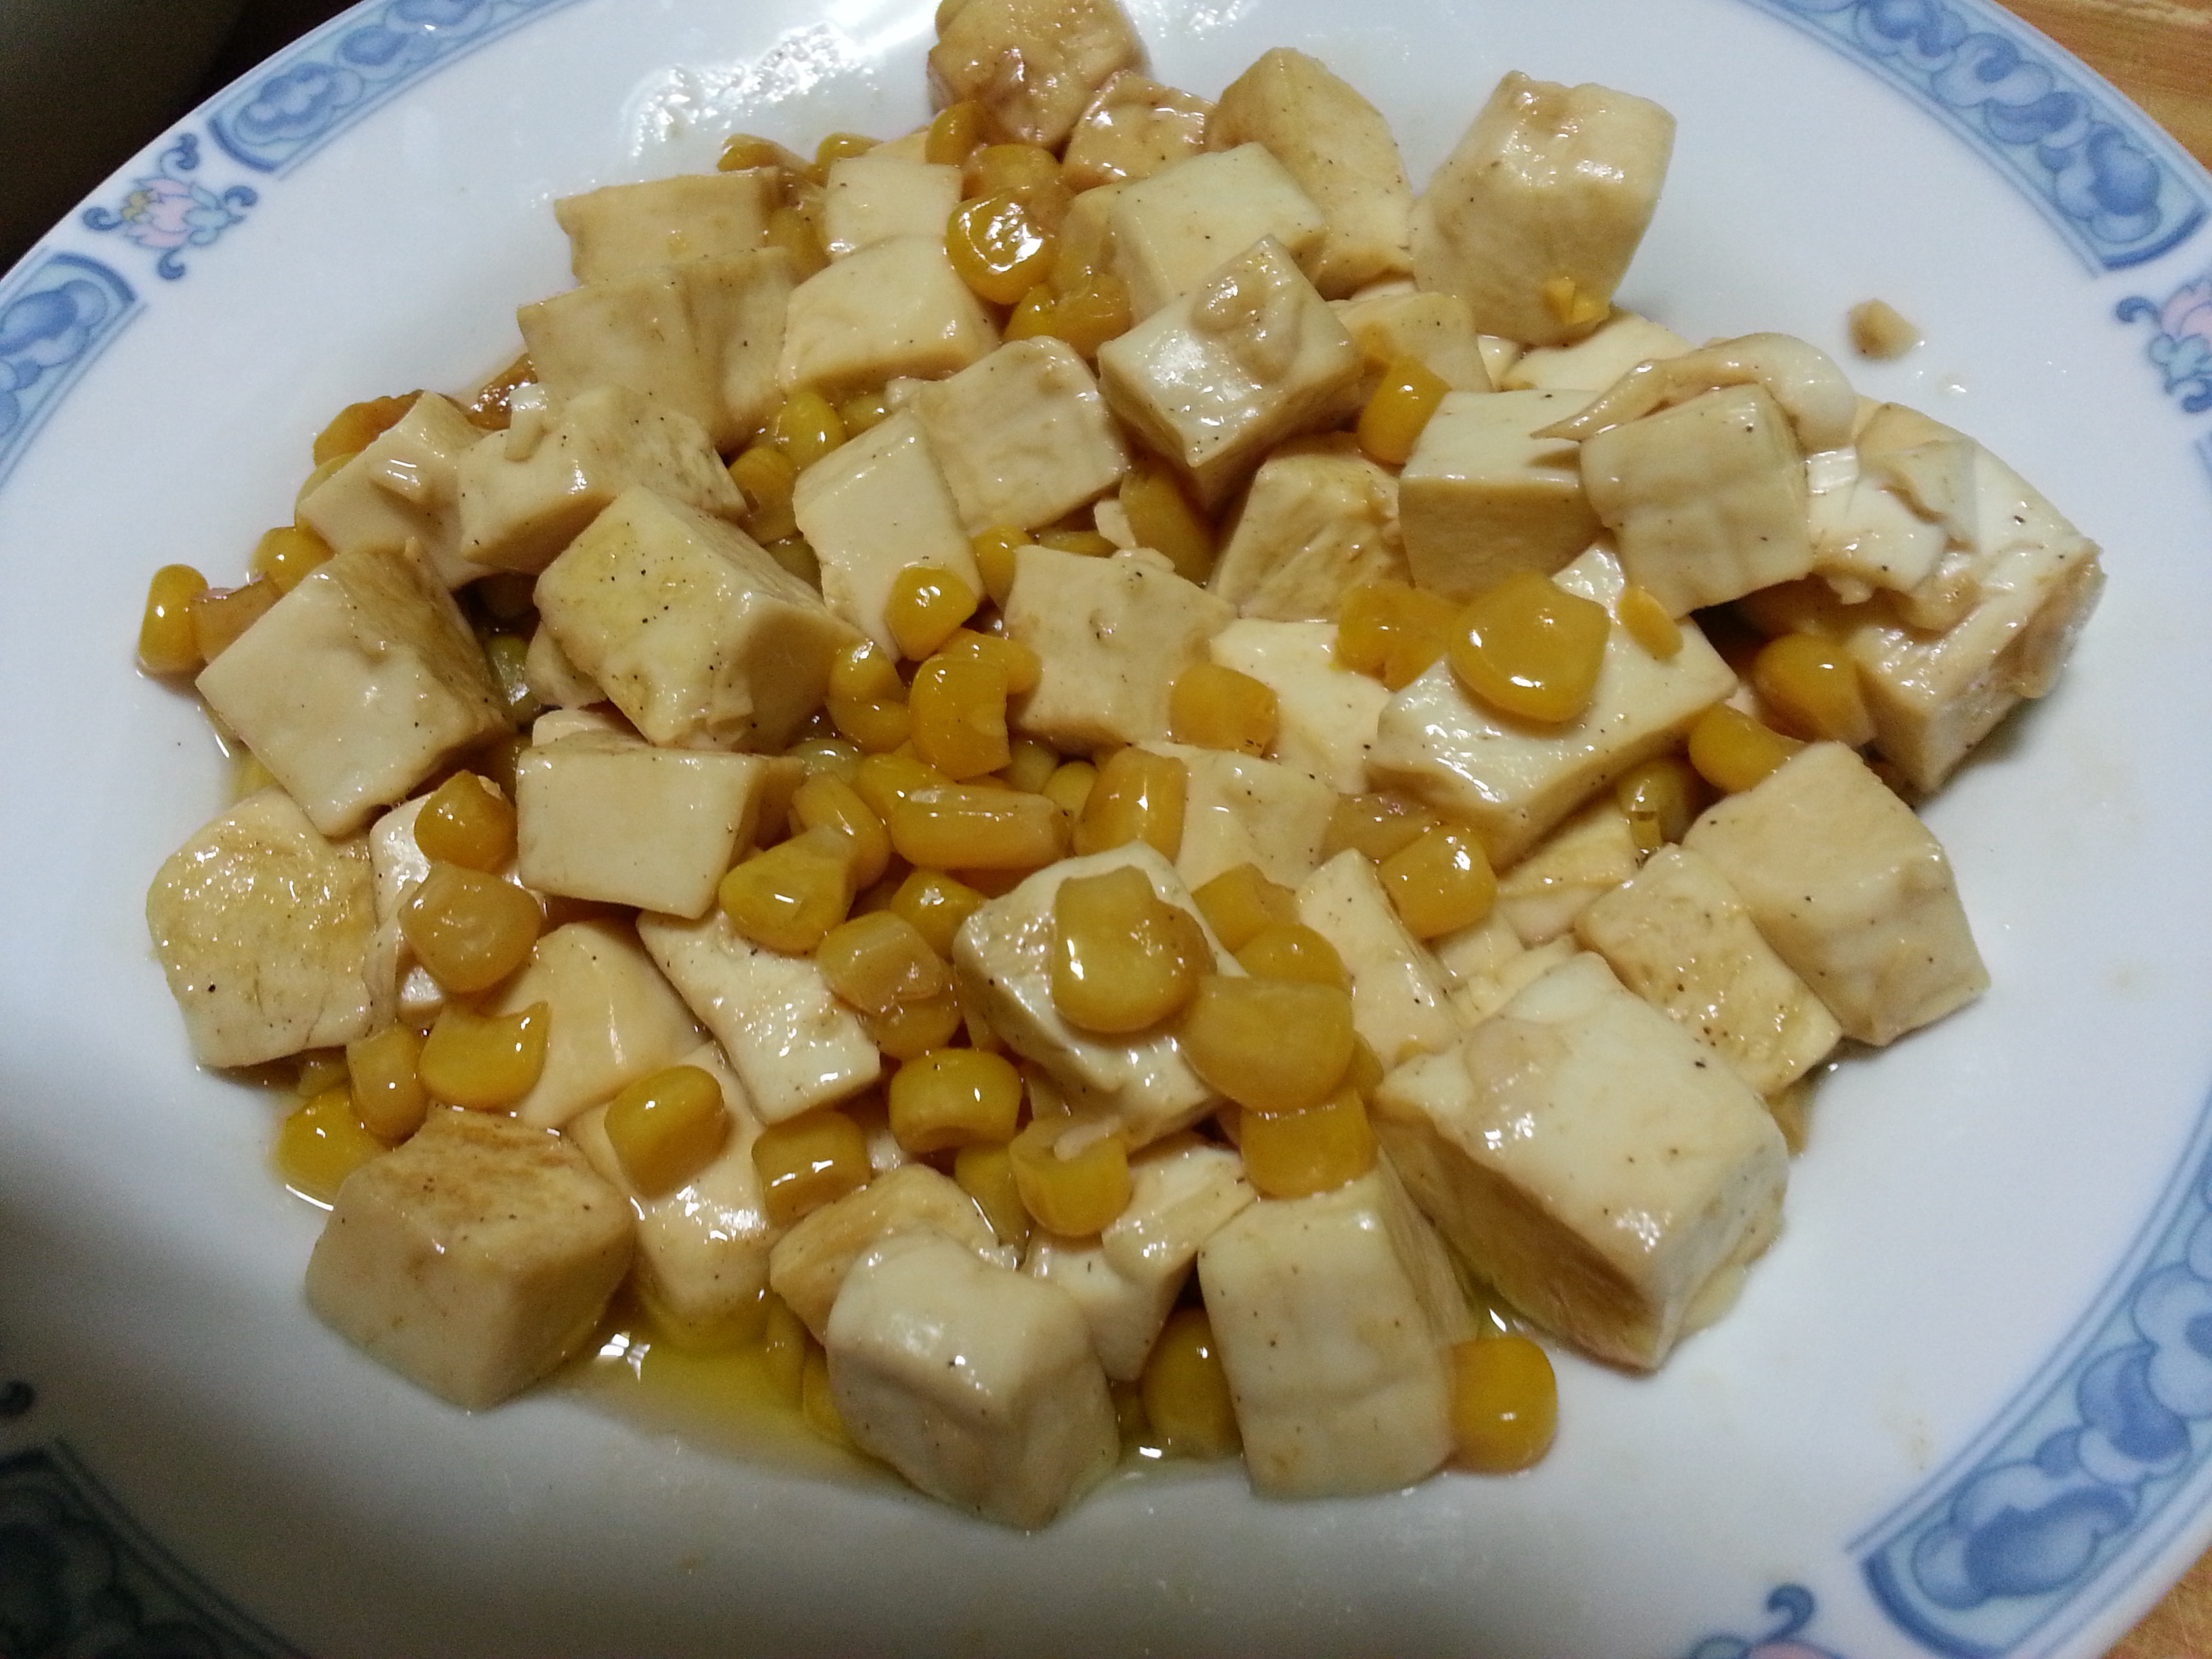 【食譜】玉米豆腐湯:www.ytower.com.tw